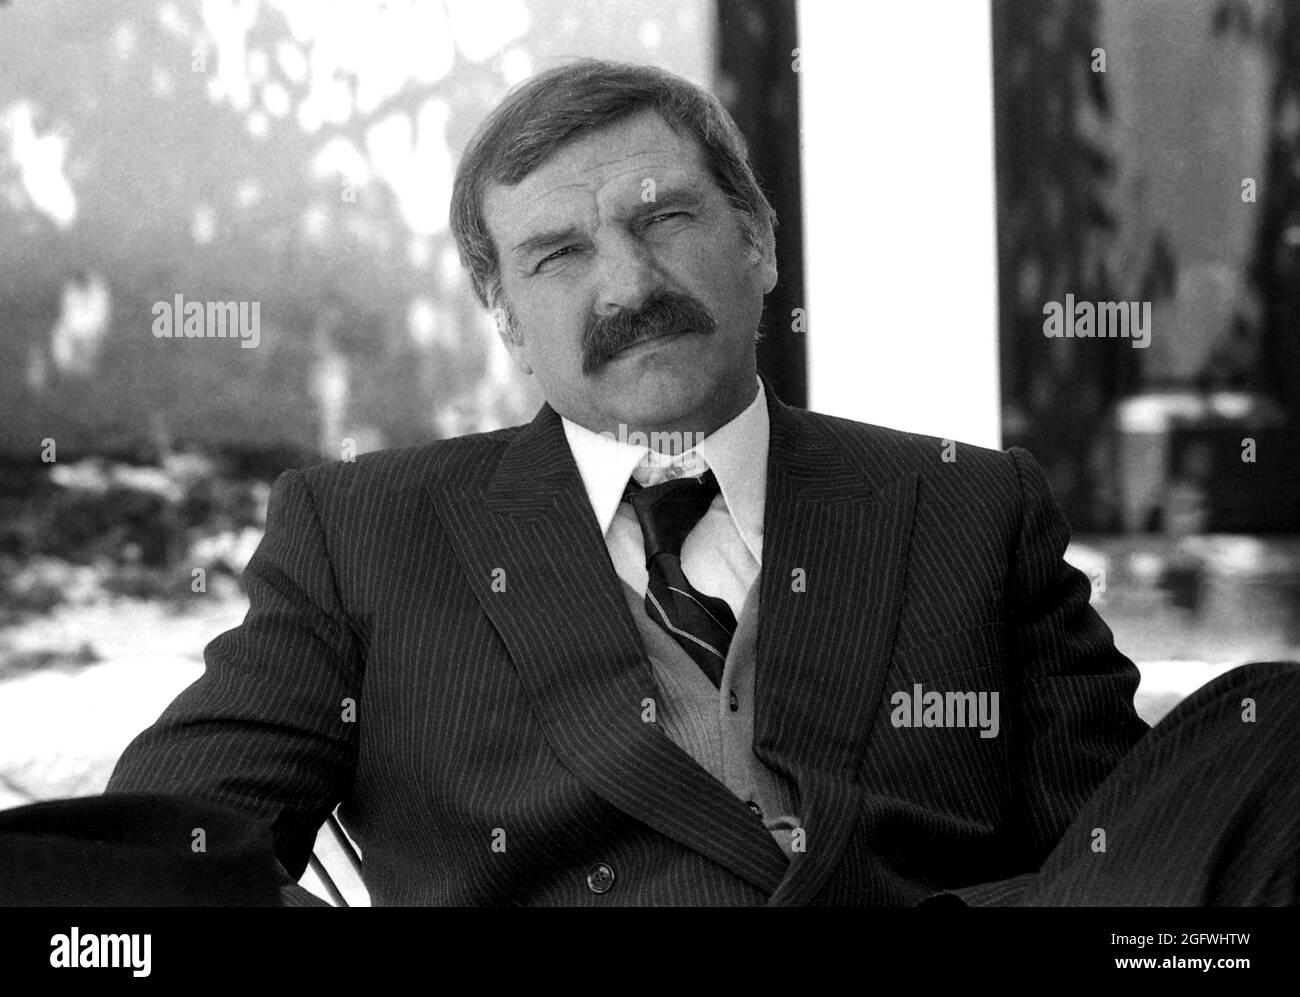 L'attore rumeno Ilarion ciobanu, 1981 Foto Stock